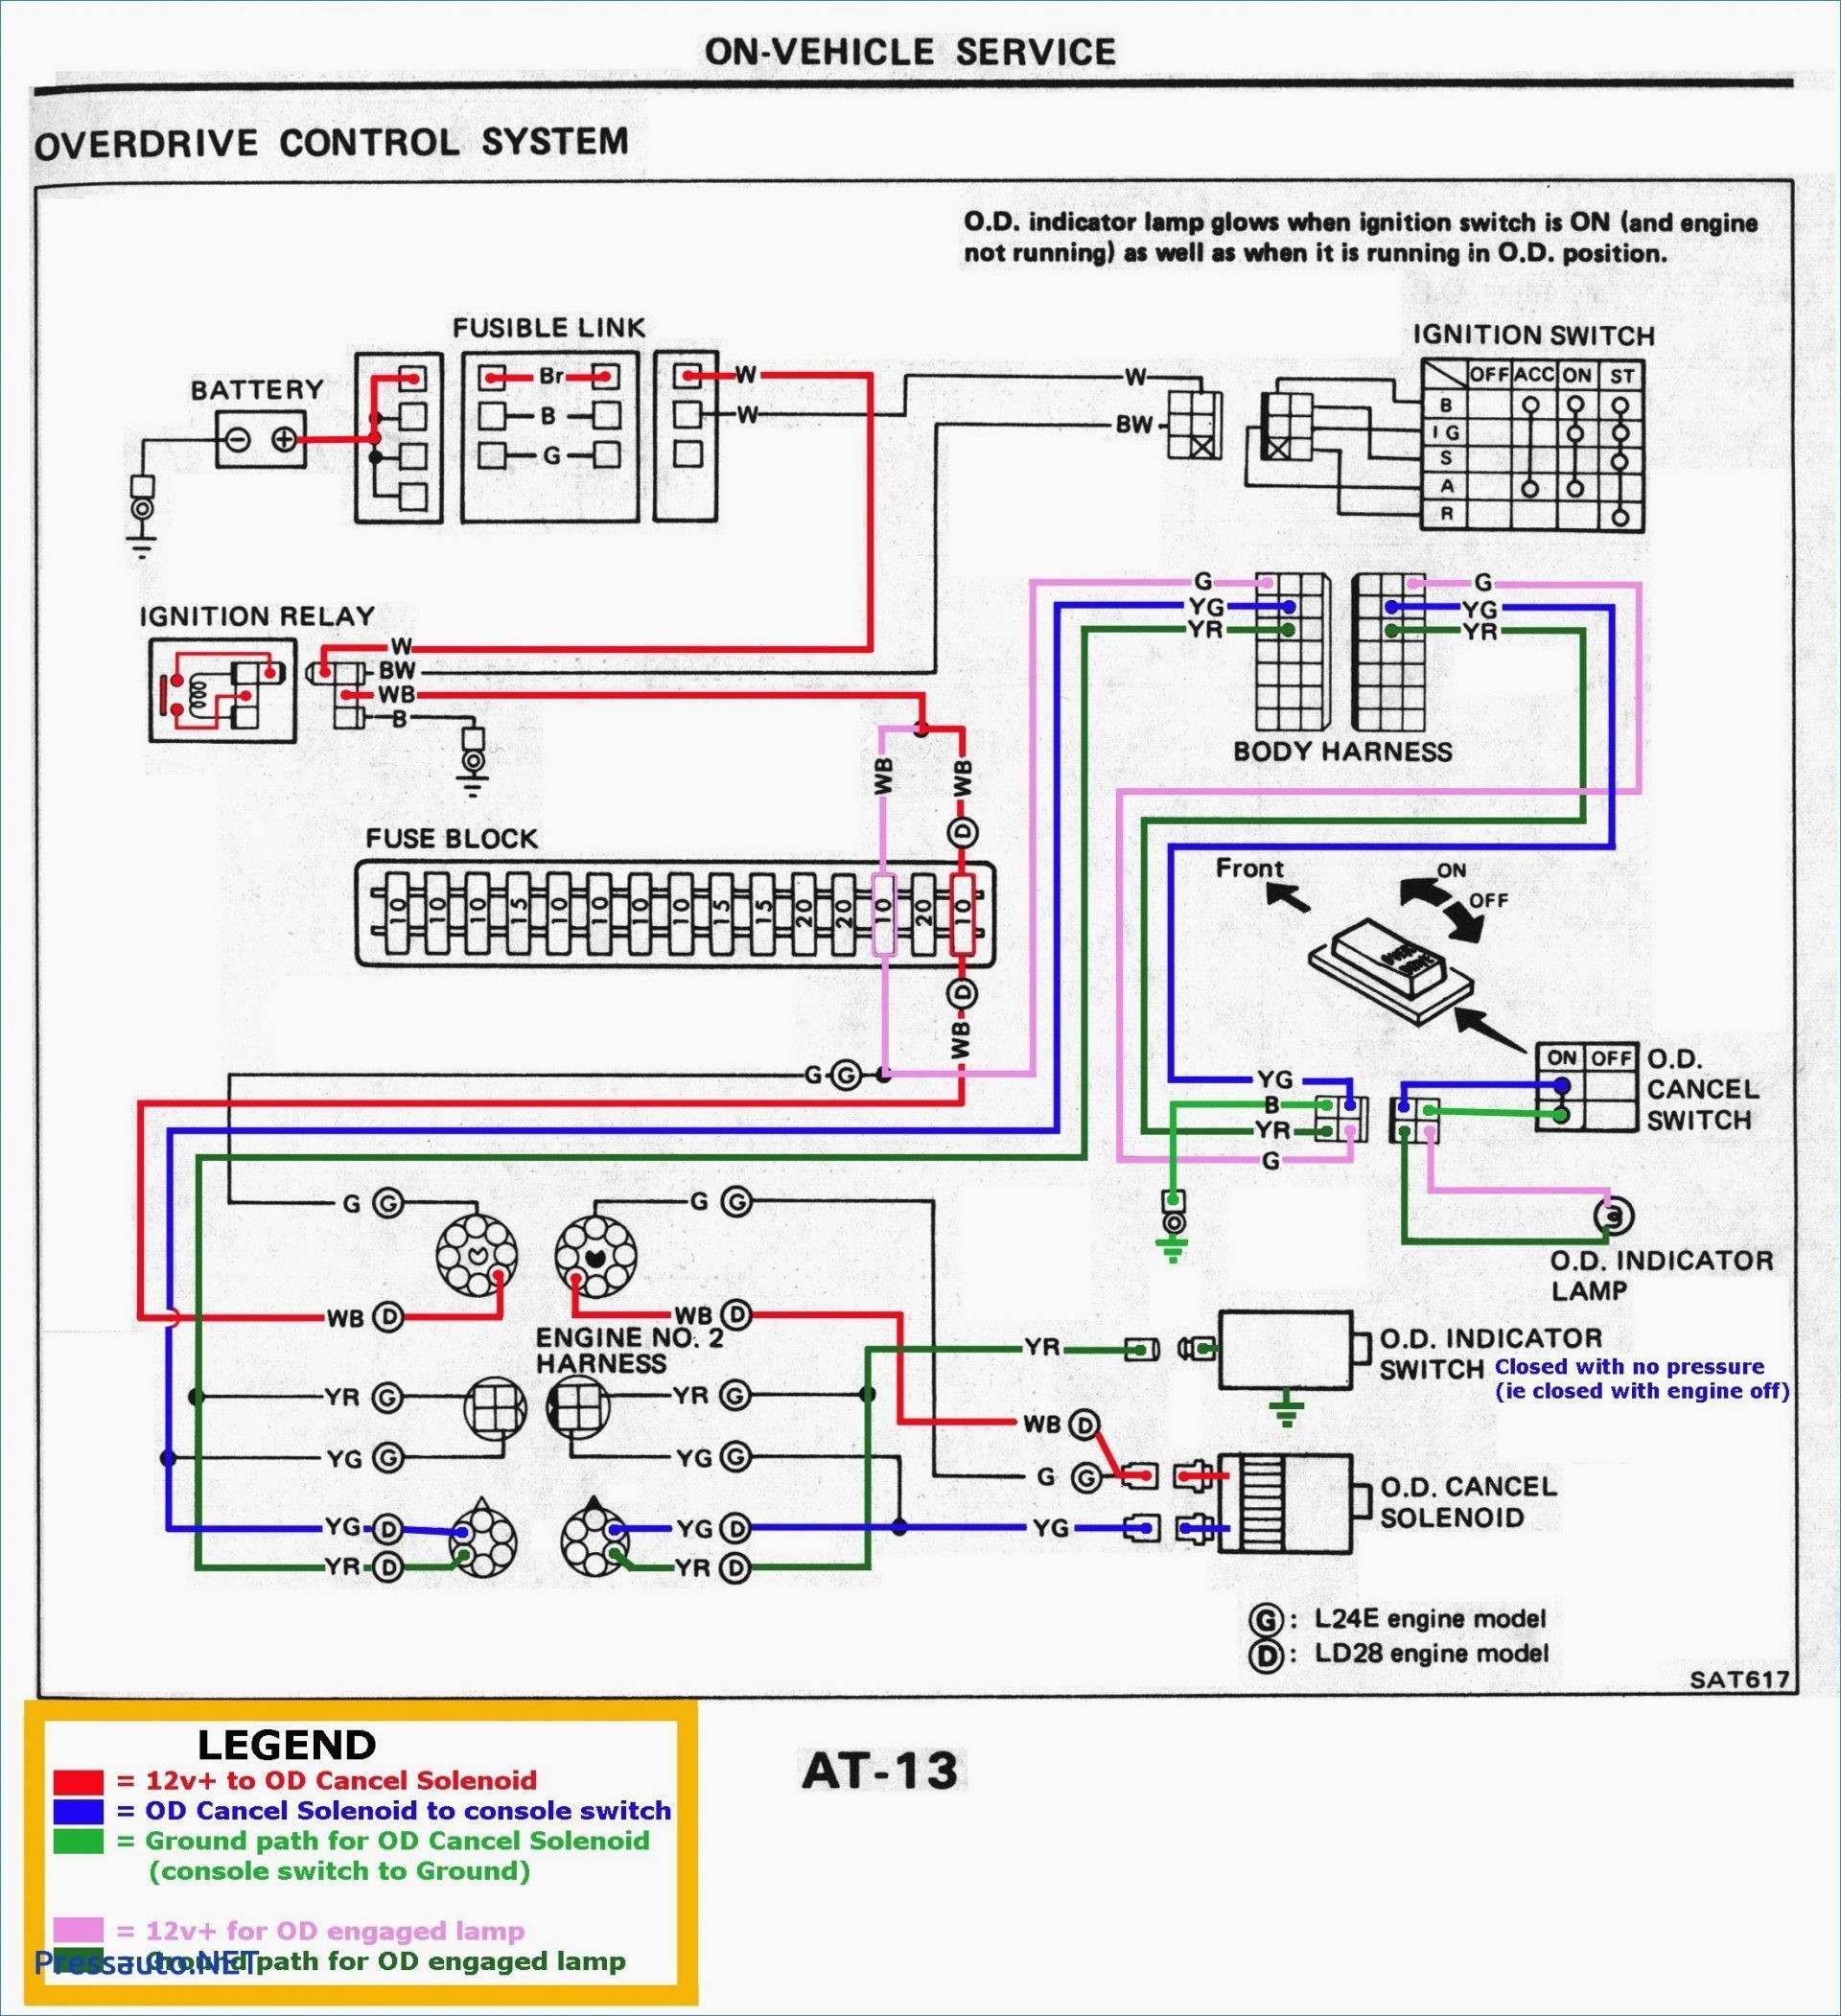 1987 Chevy Truck Wiring Diagram 1977 C10 Alternator Wiring Diagram Detailed Schematics Diagram Of 1987 Chevy Truck Wiring Diagram